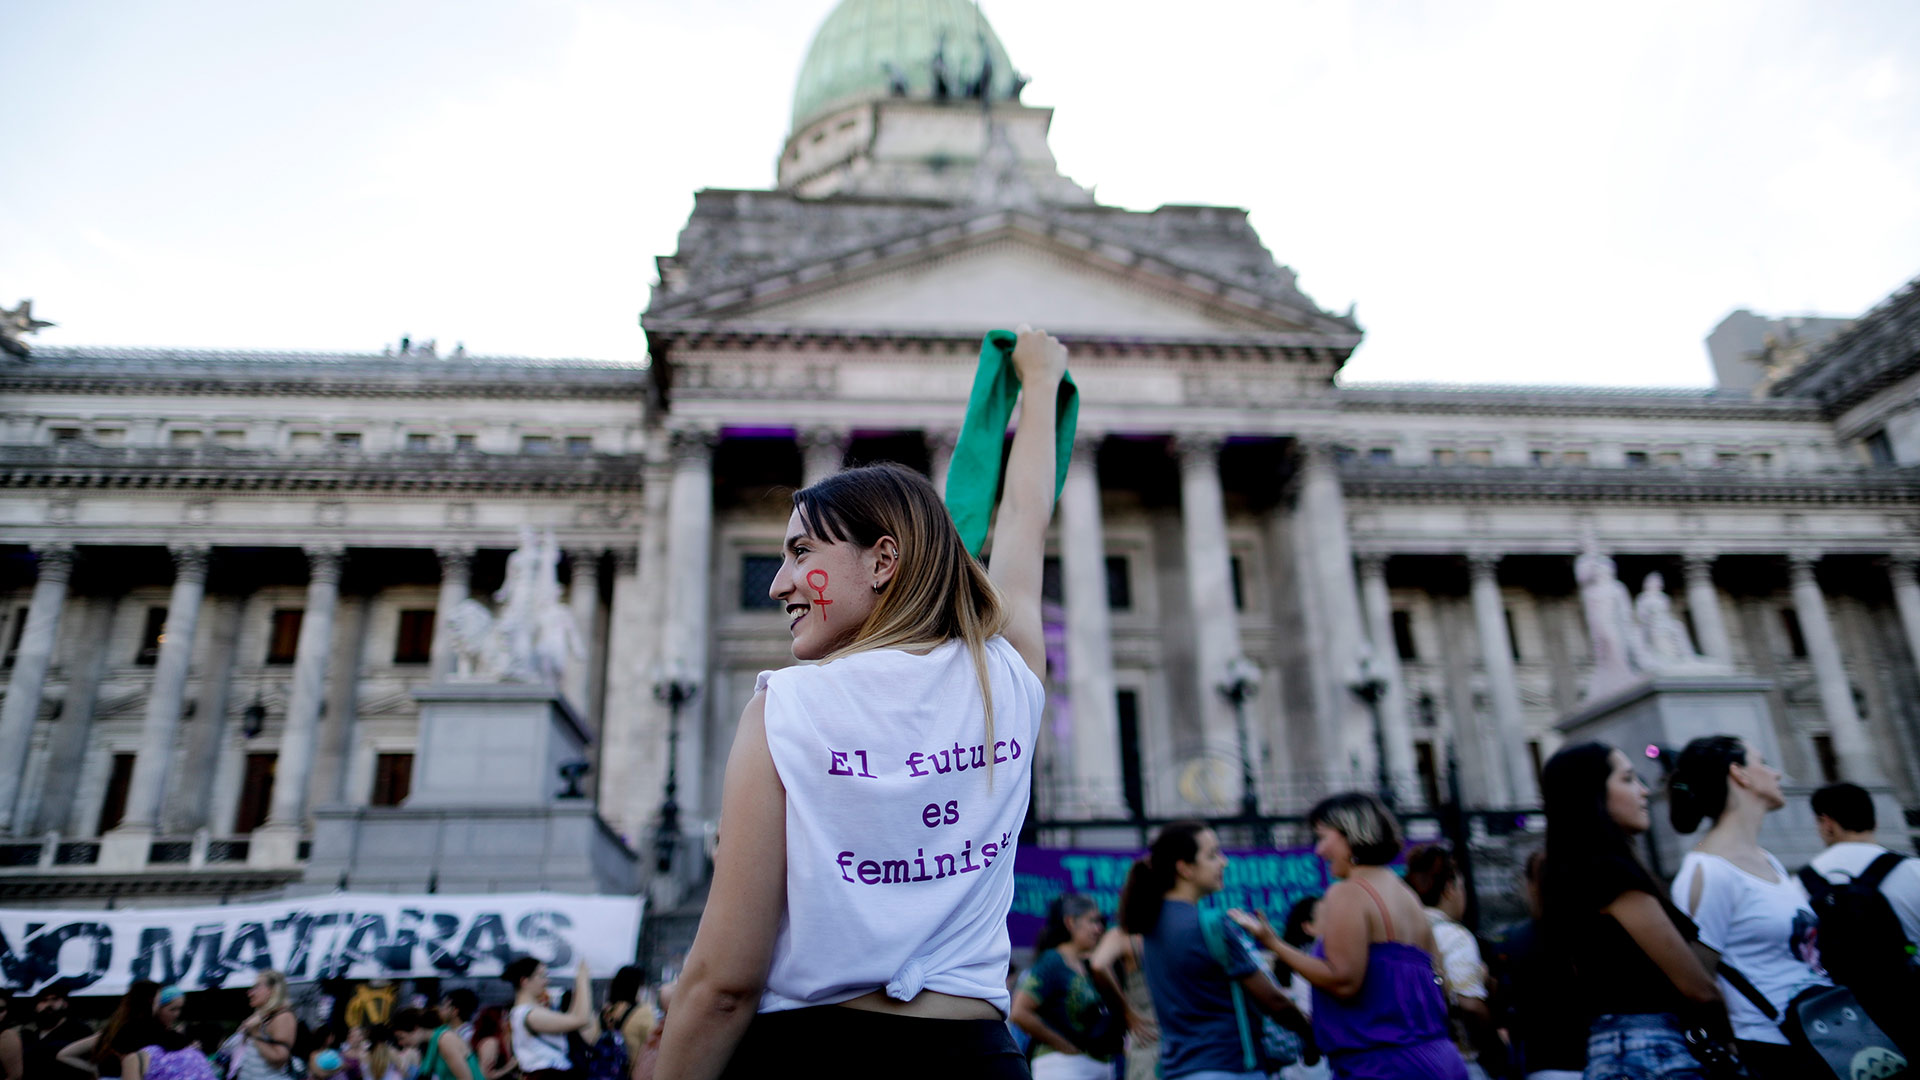 Argentina registra 155 feminicidios entre enero y julio